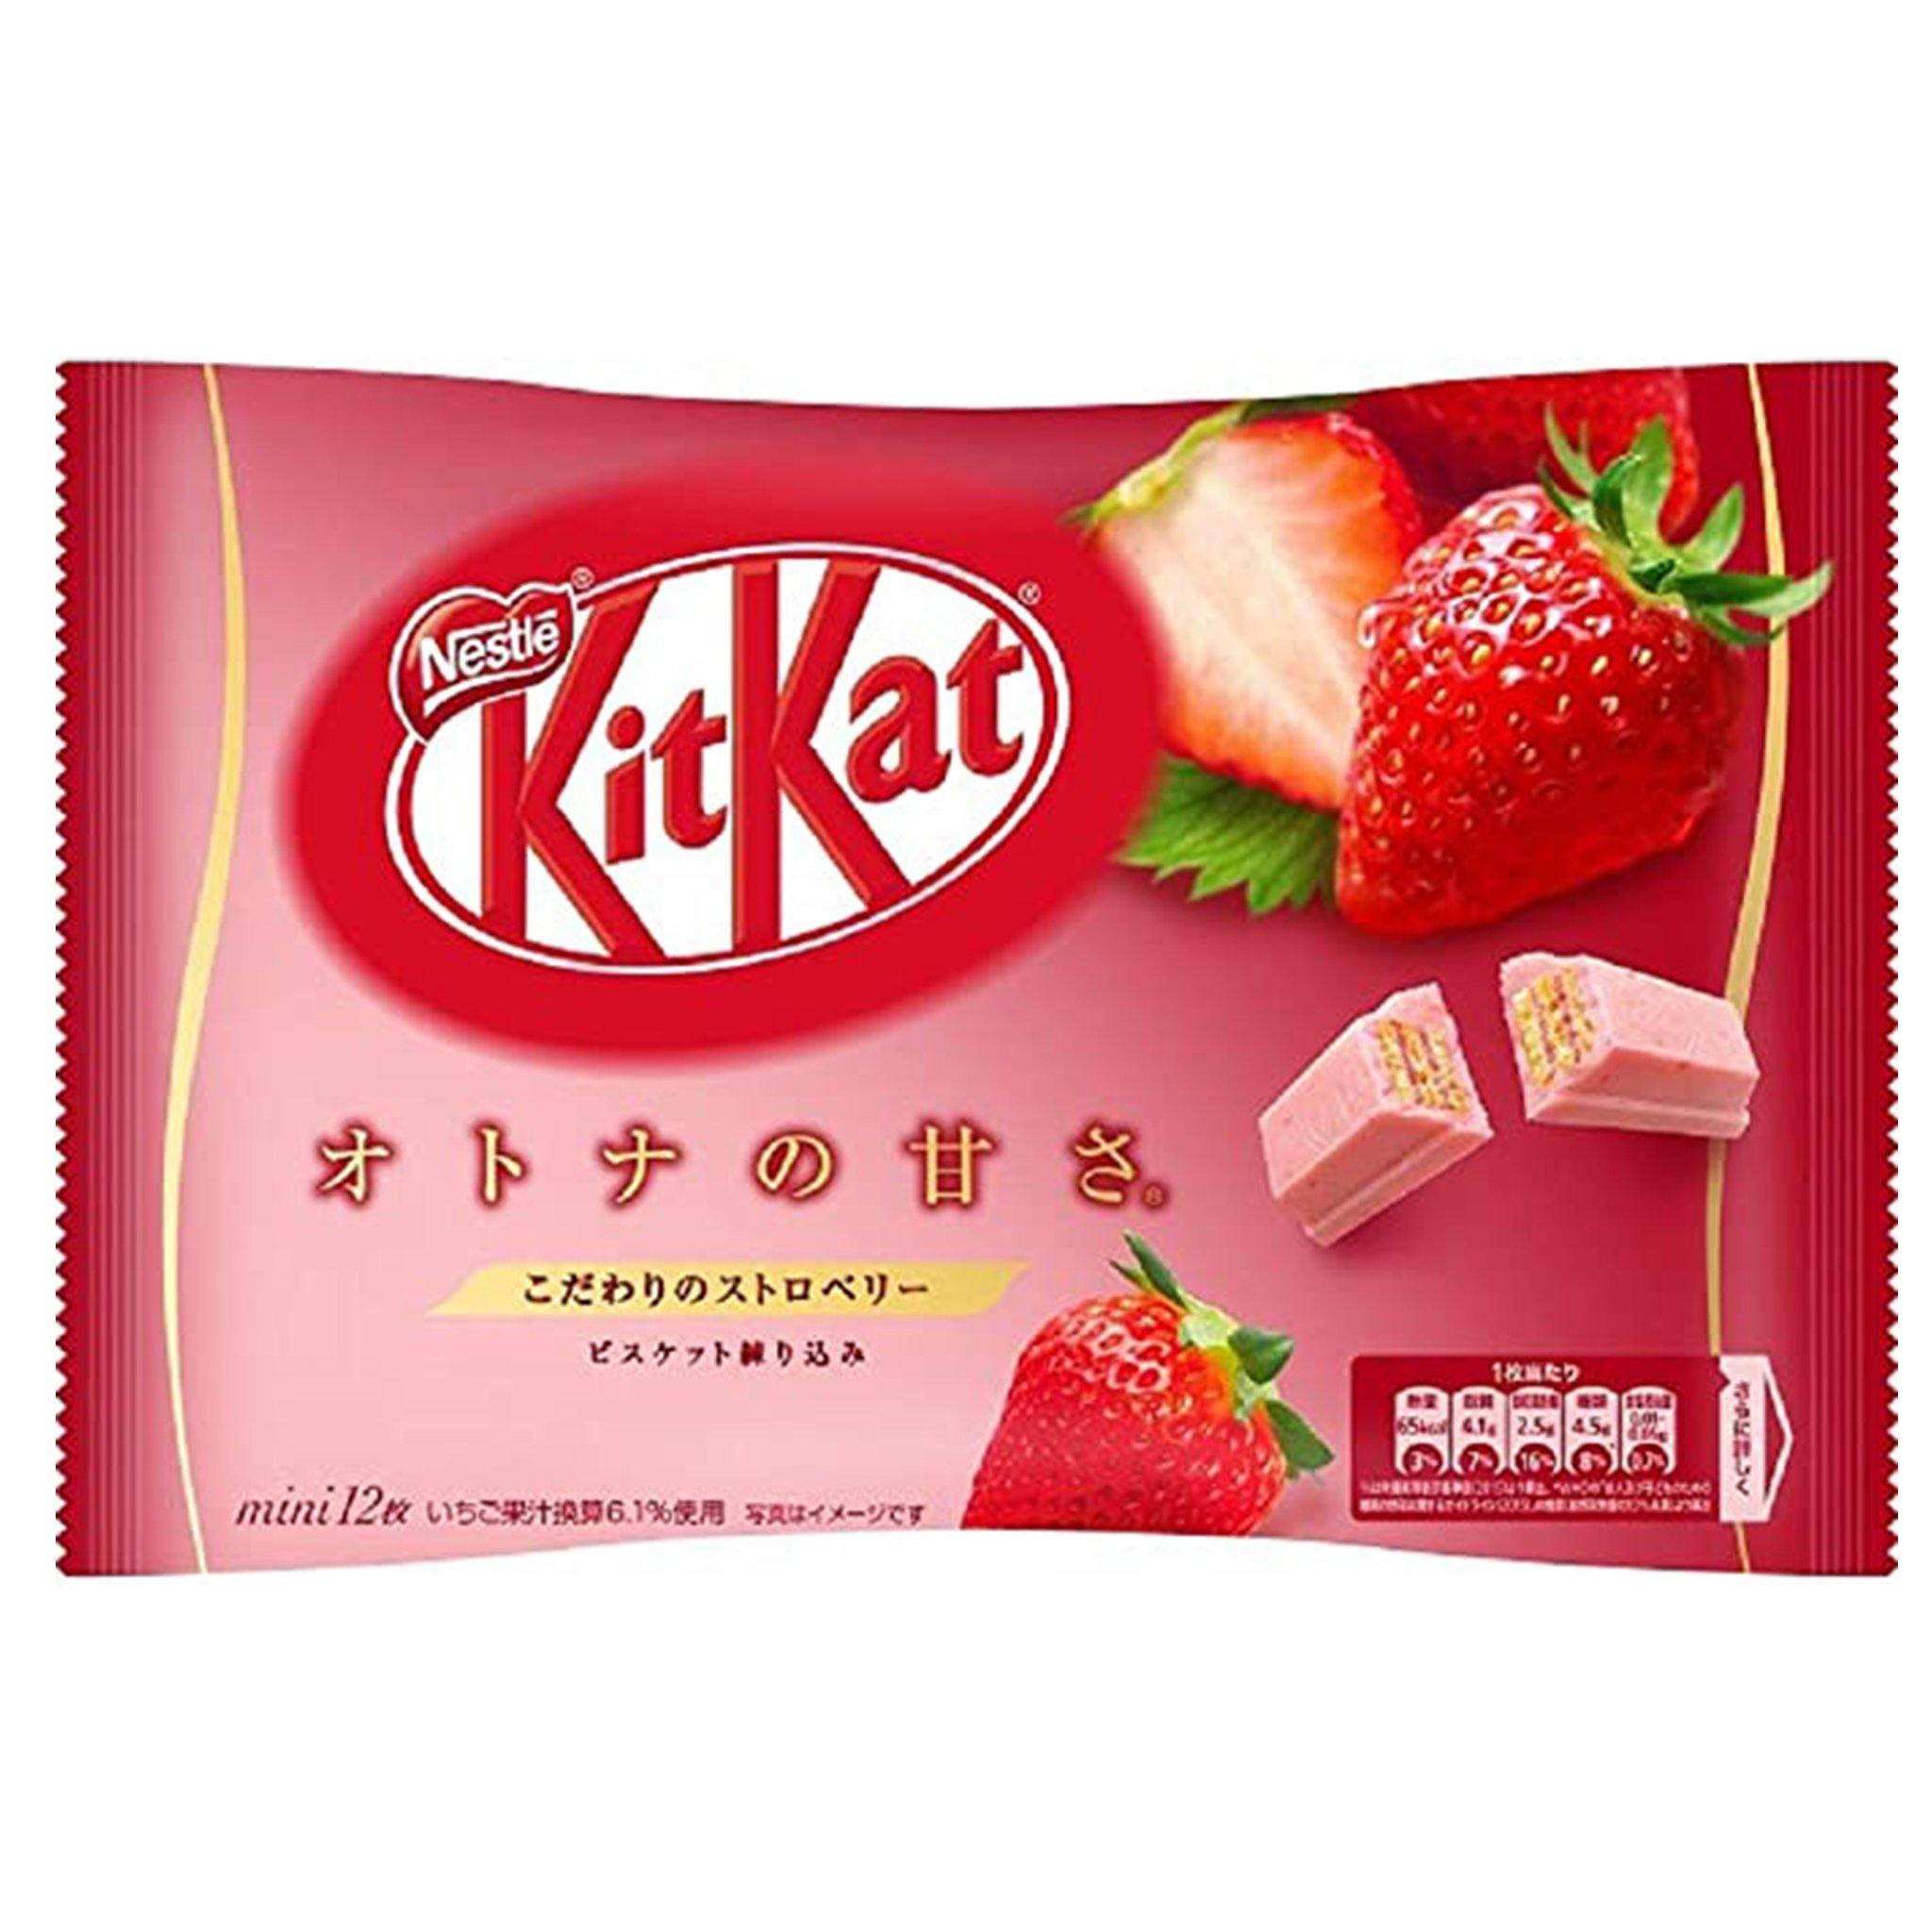 Kit Kat Strawberry - Japan - Sweet Exotics